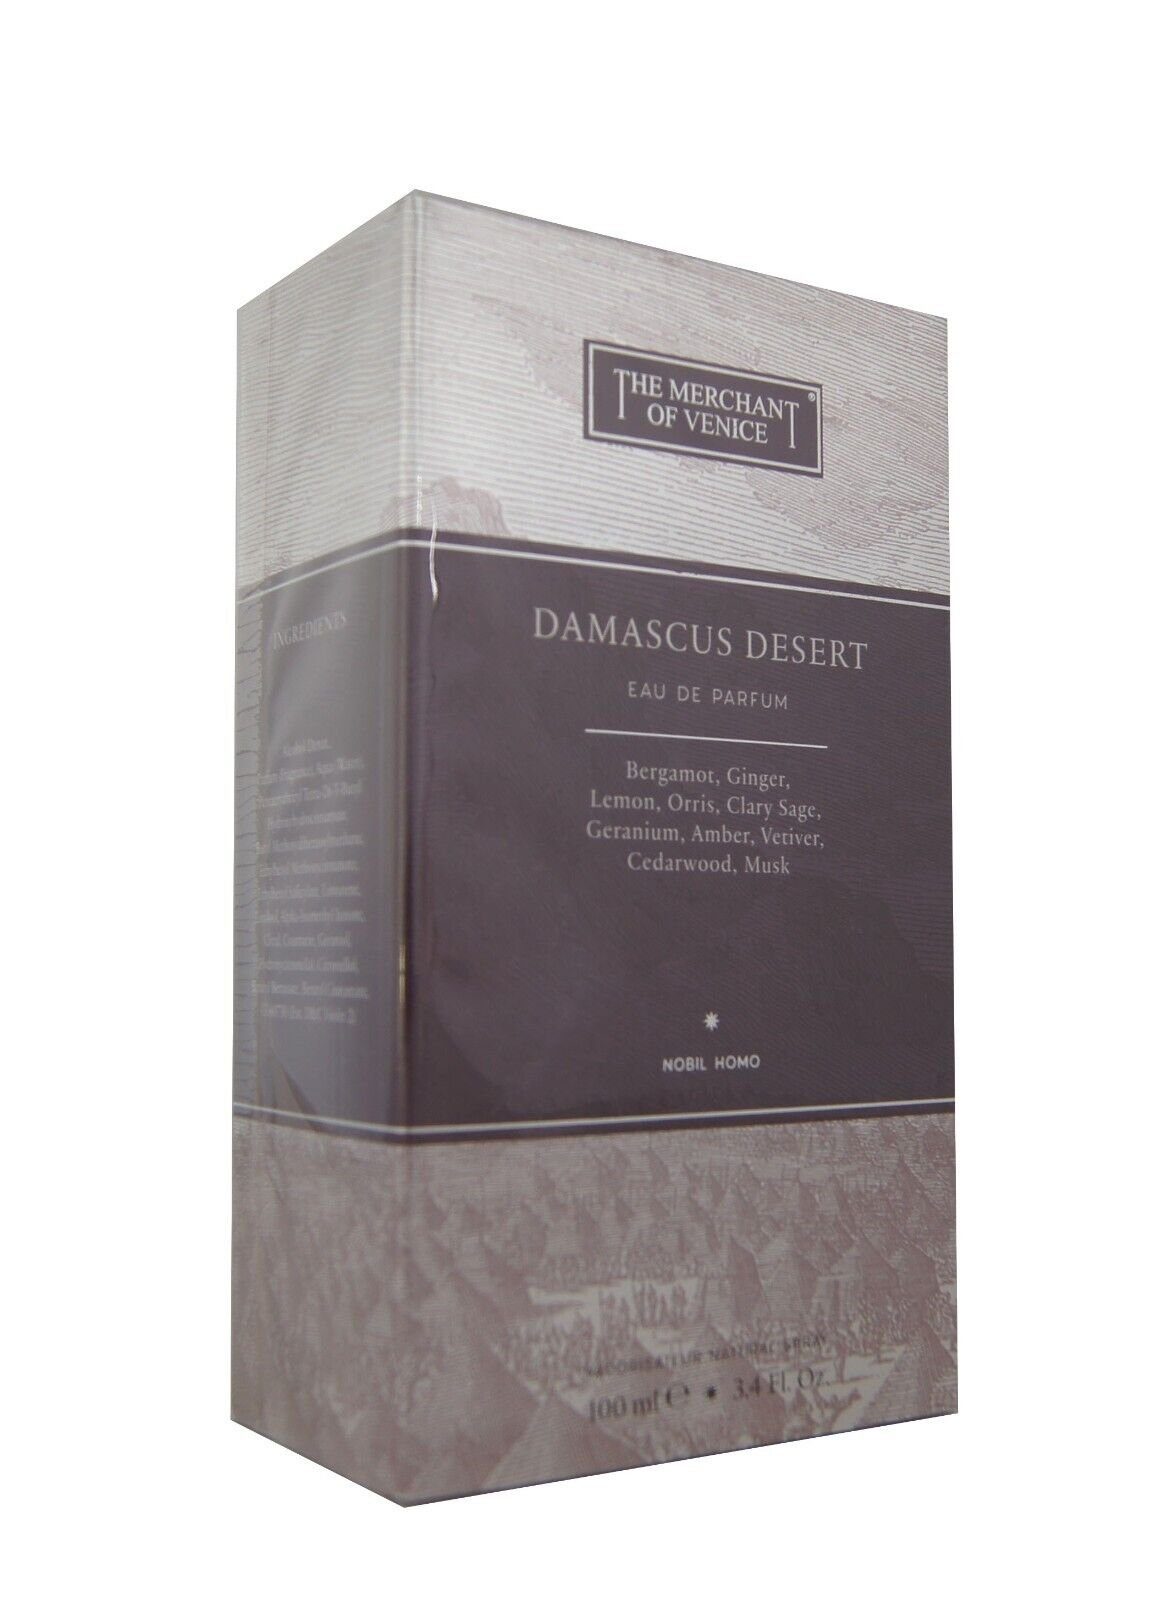 The Merchant Eau Damascus Of Eau of Venice de Desert Parfum 100ml. edp Parfum de Merchant The Venice